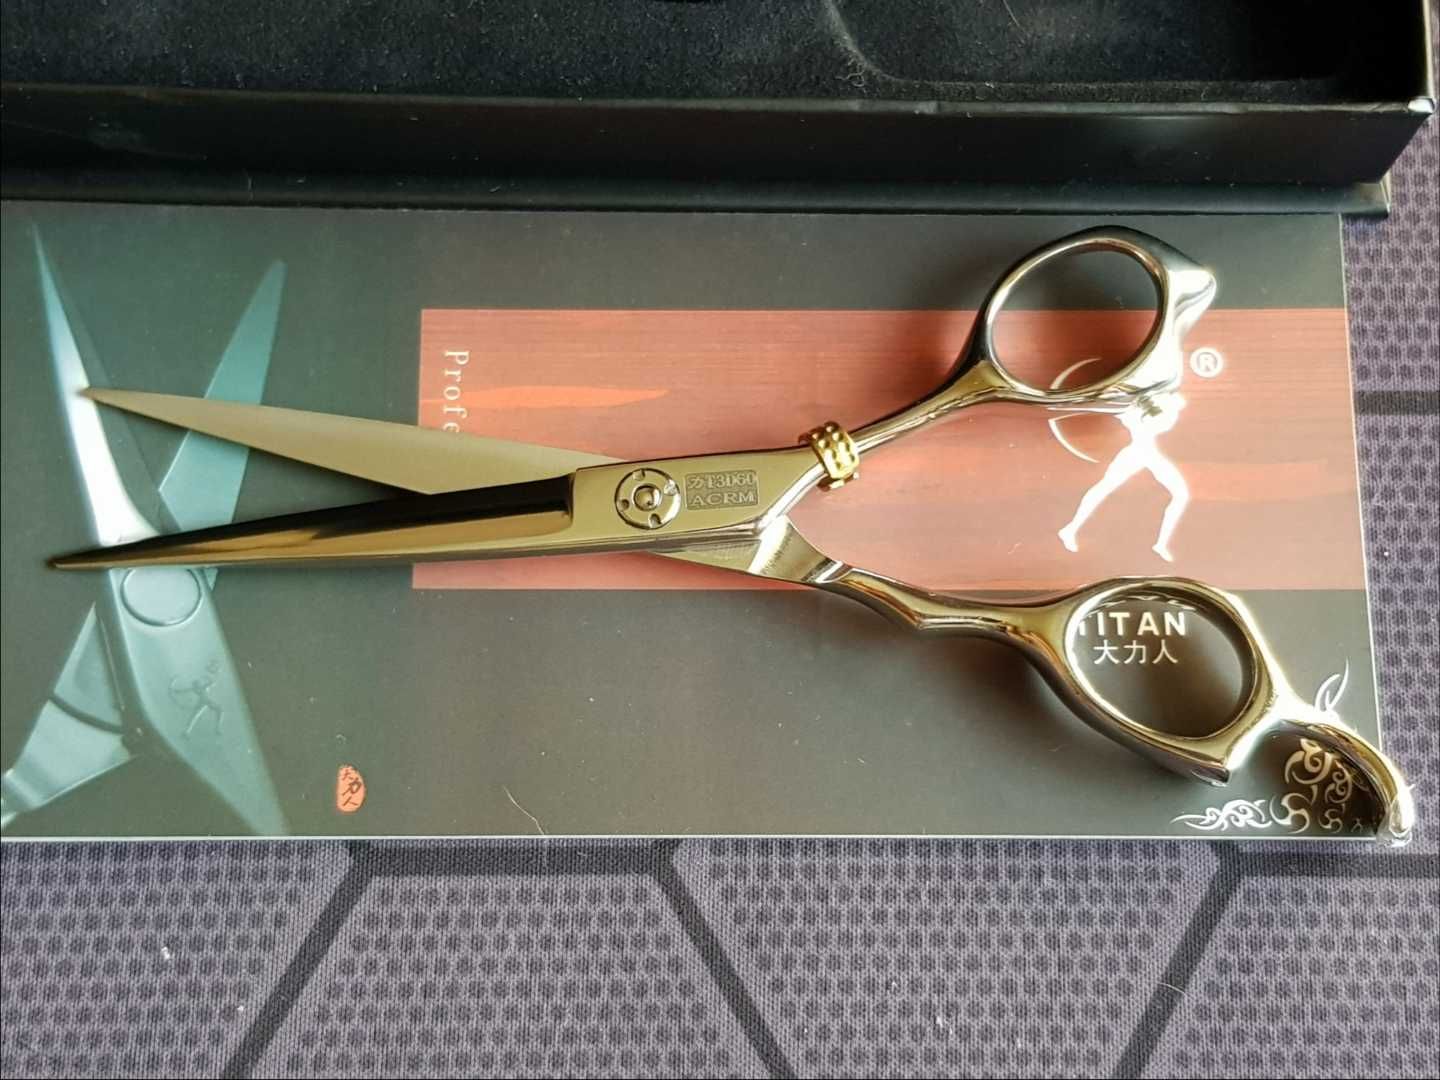 Новые профессиональные парикмахерские ножницы Titan T3D60.